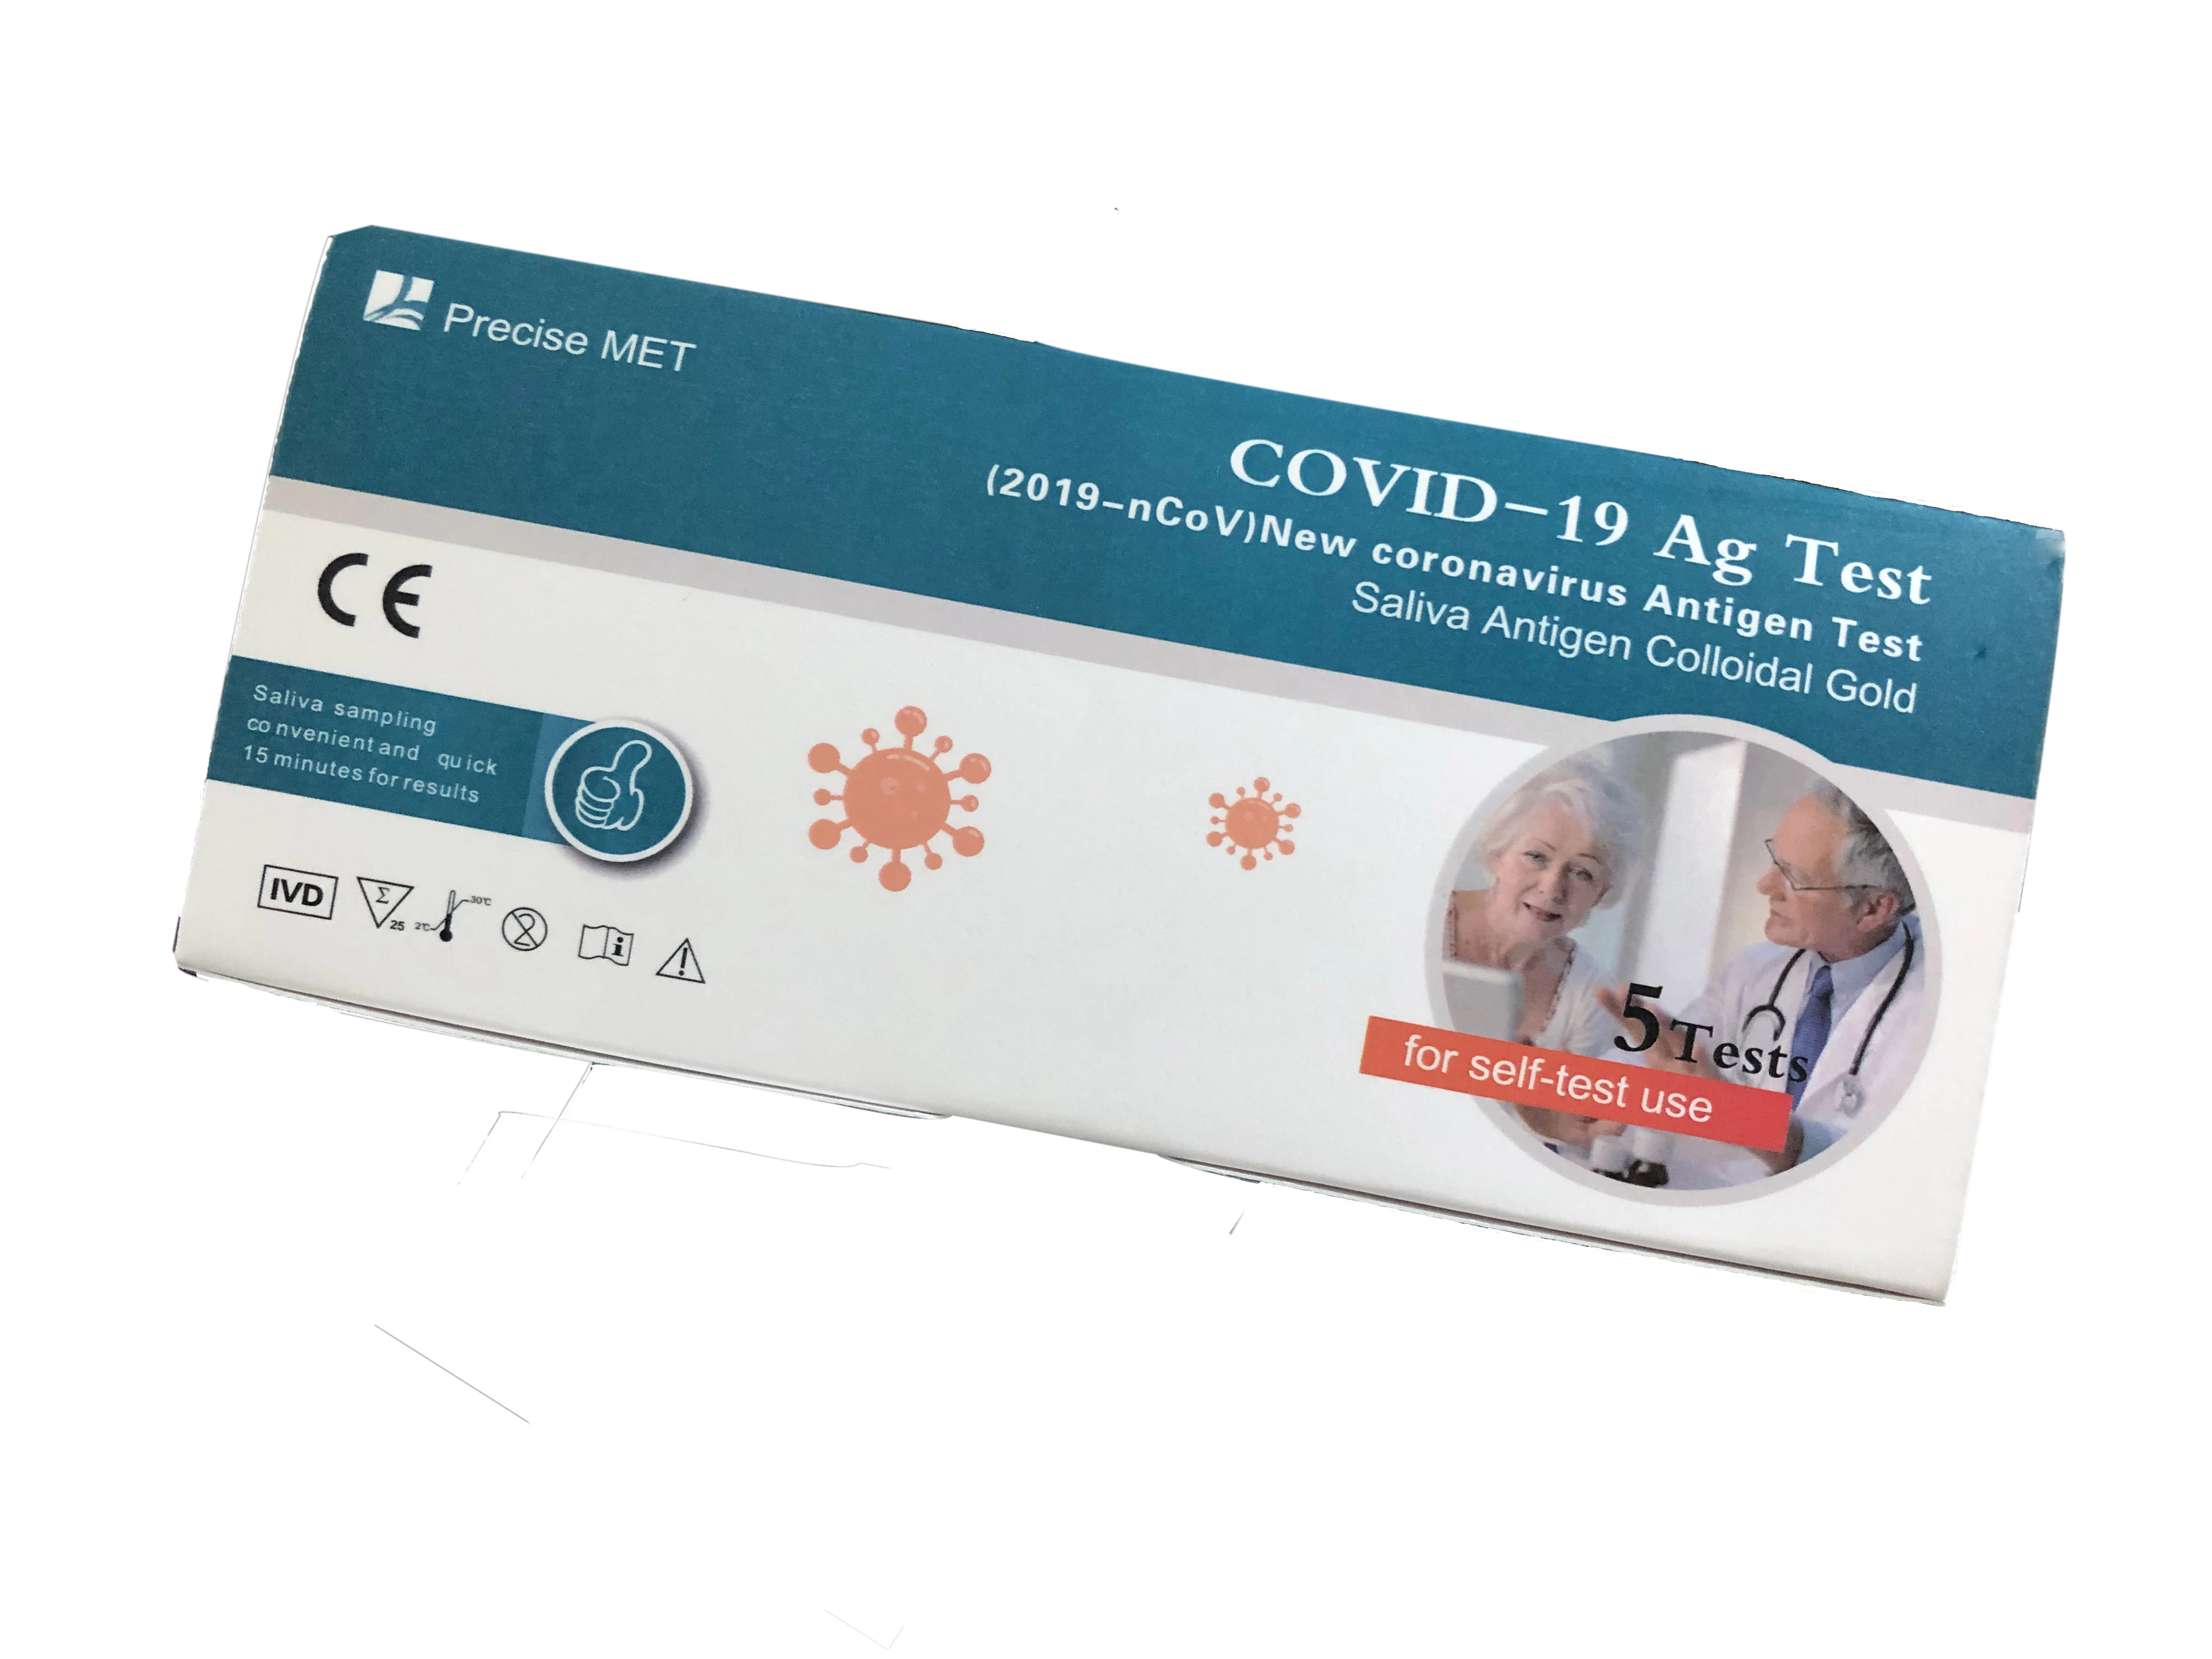 10 testes/teste de antígeno de saliva (ouro coloidal)